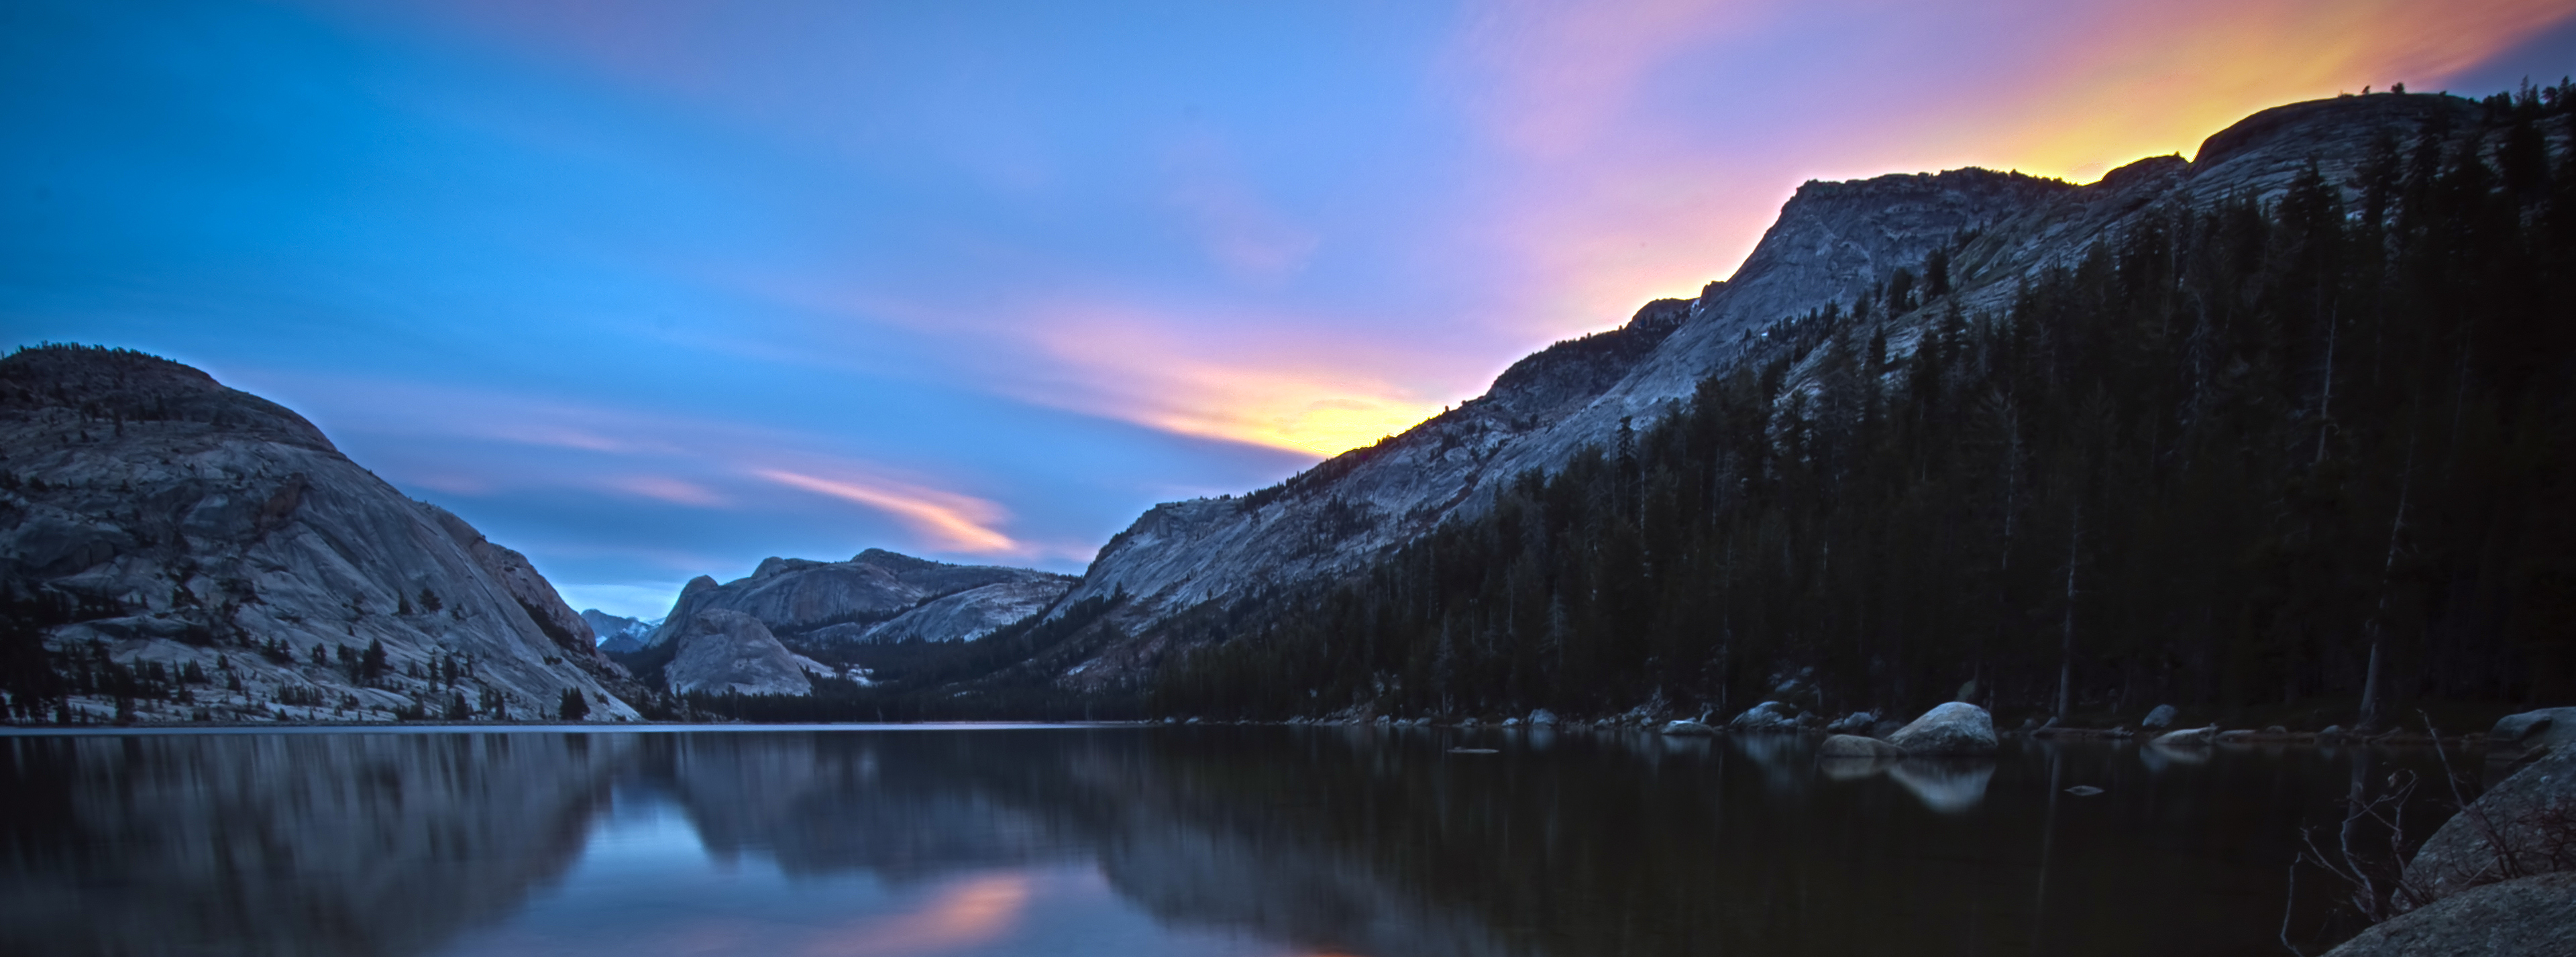 sunset, mountains, nature - desktop wallpaper